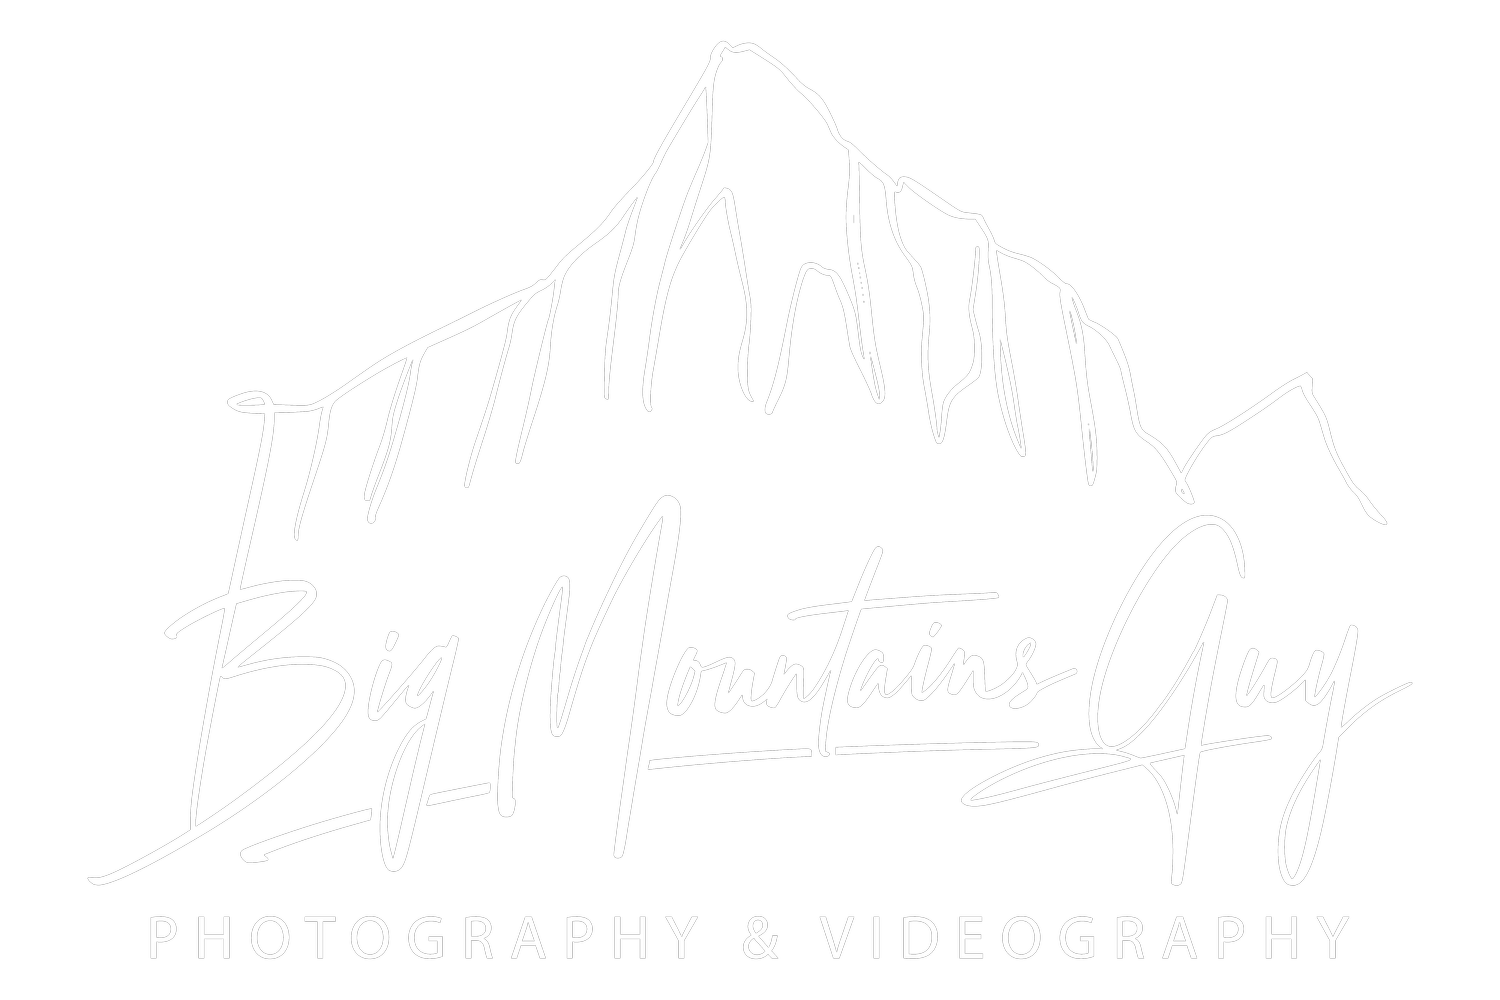 Big Mountains Guy Site Logo White